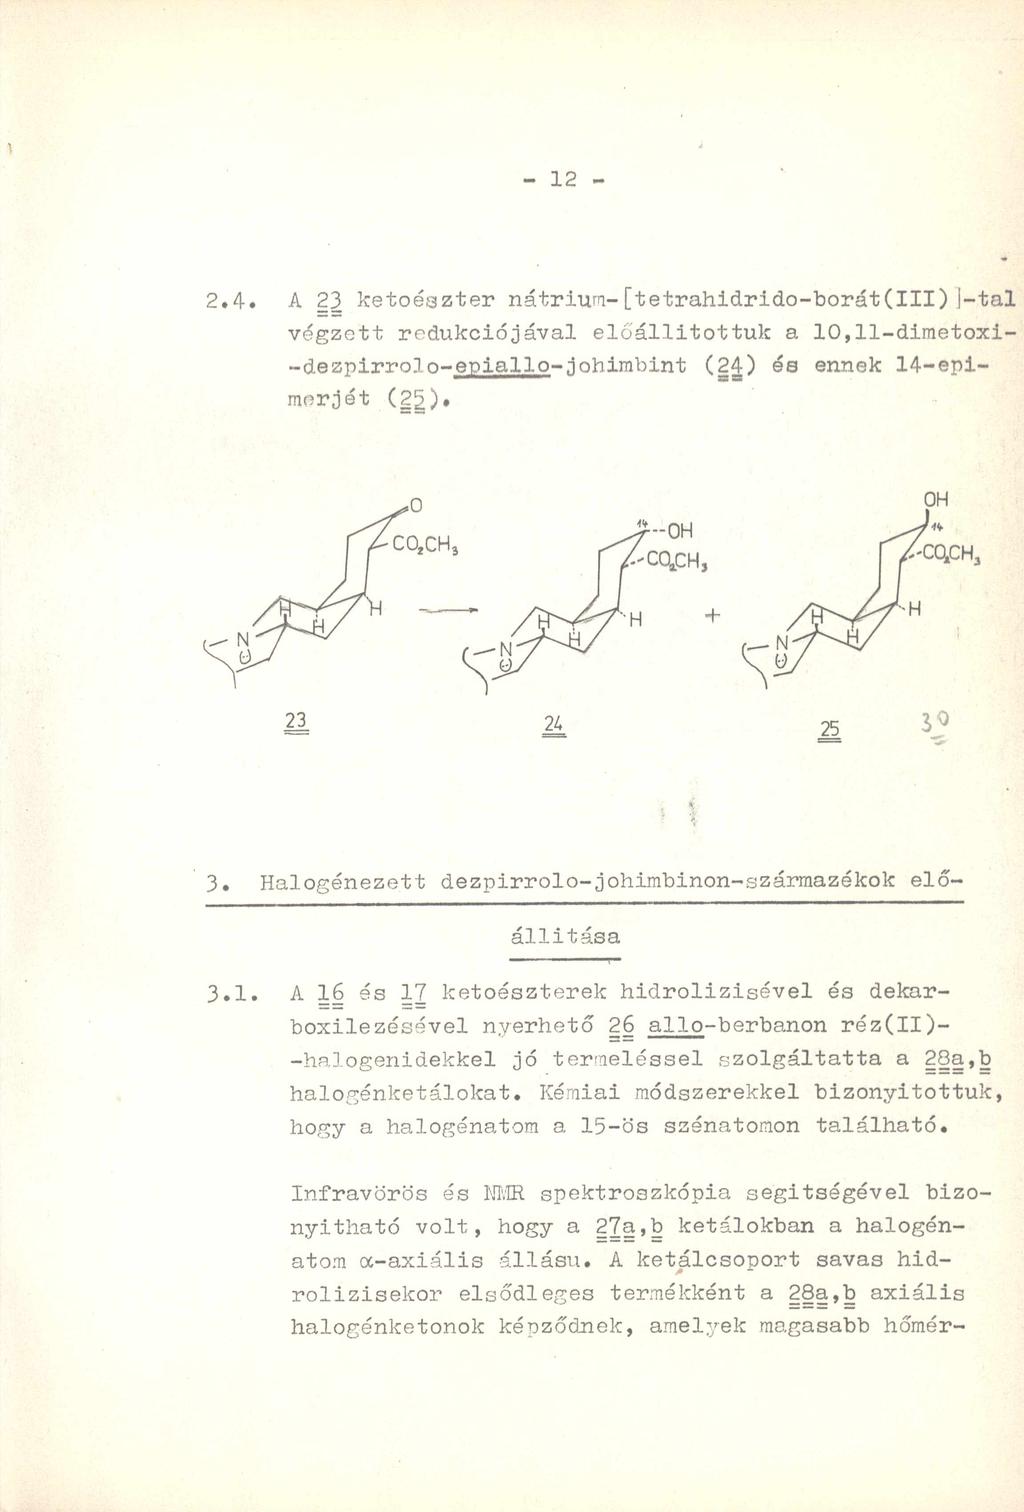 - 12-2.4. A 23 ketoészter nátrium-[tetrahidrido-borát(iii)j-tal végzett redukciójával előállítóttűk a 10,11-dimetoxi- -dezpirrolo-epiallo-johimbint (24) és ennek 14-epimerjét (2g). e z 3.